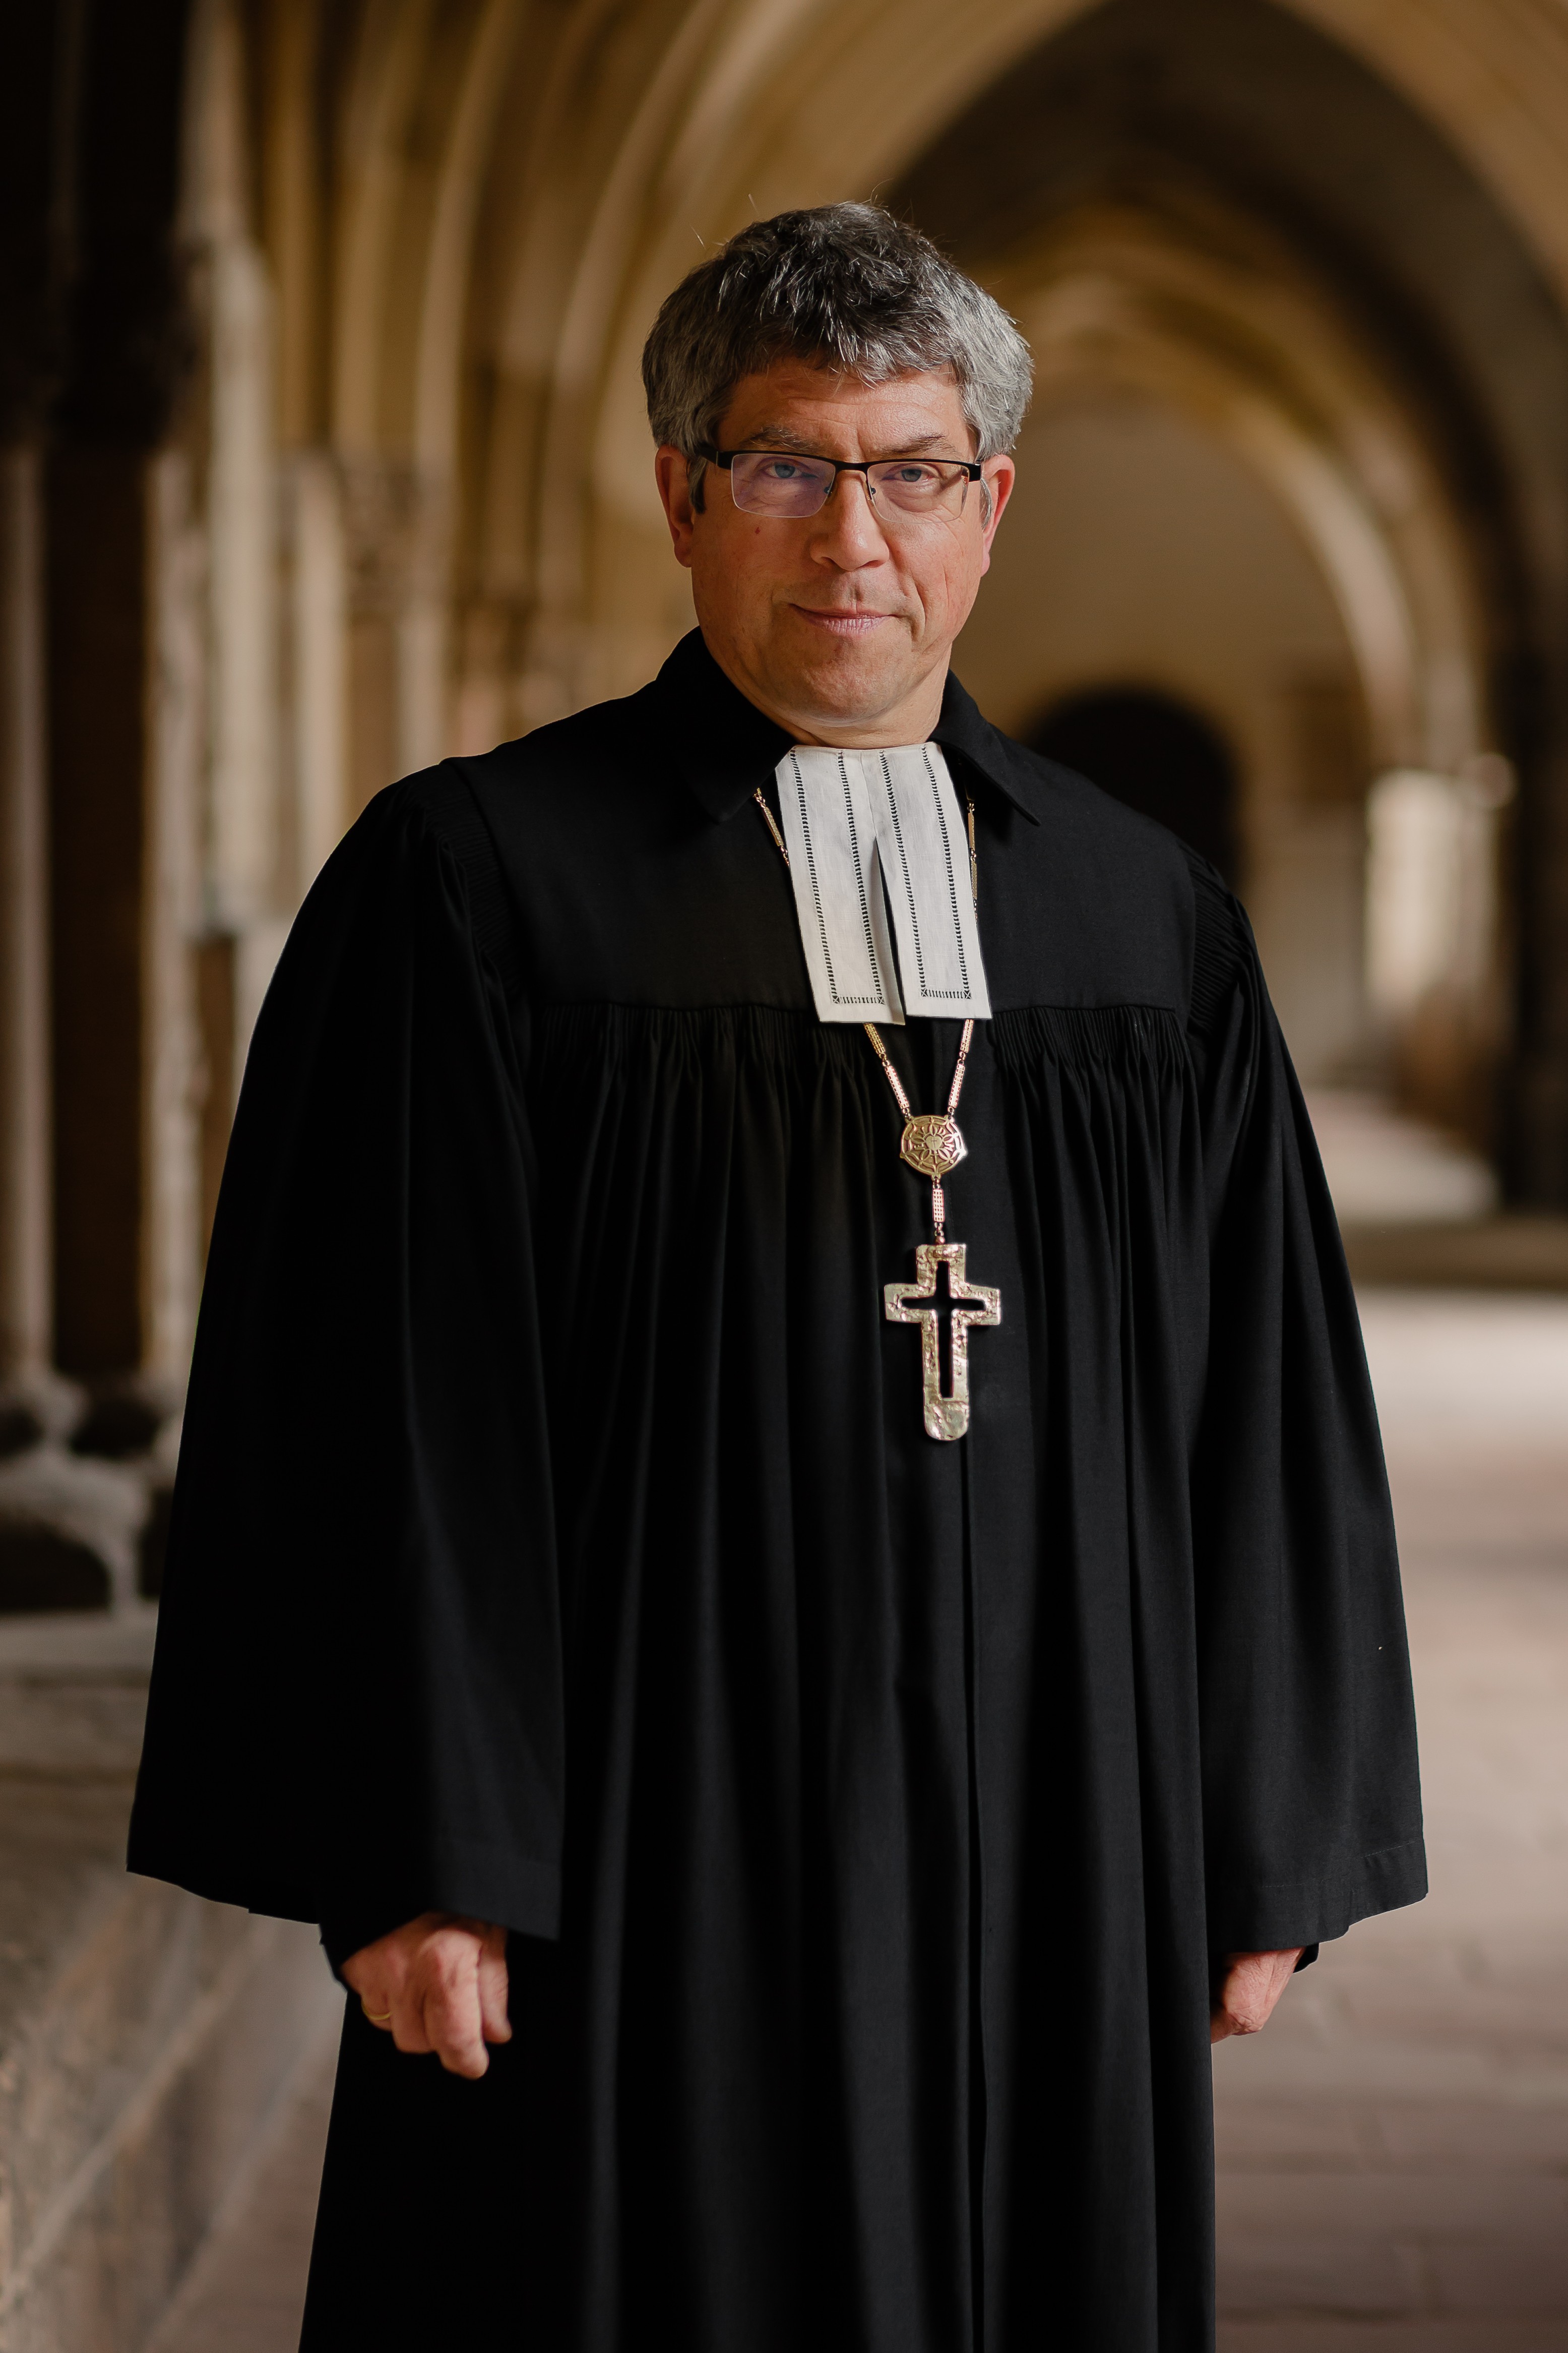 Landesbischof Friedrich Kramer